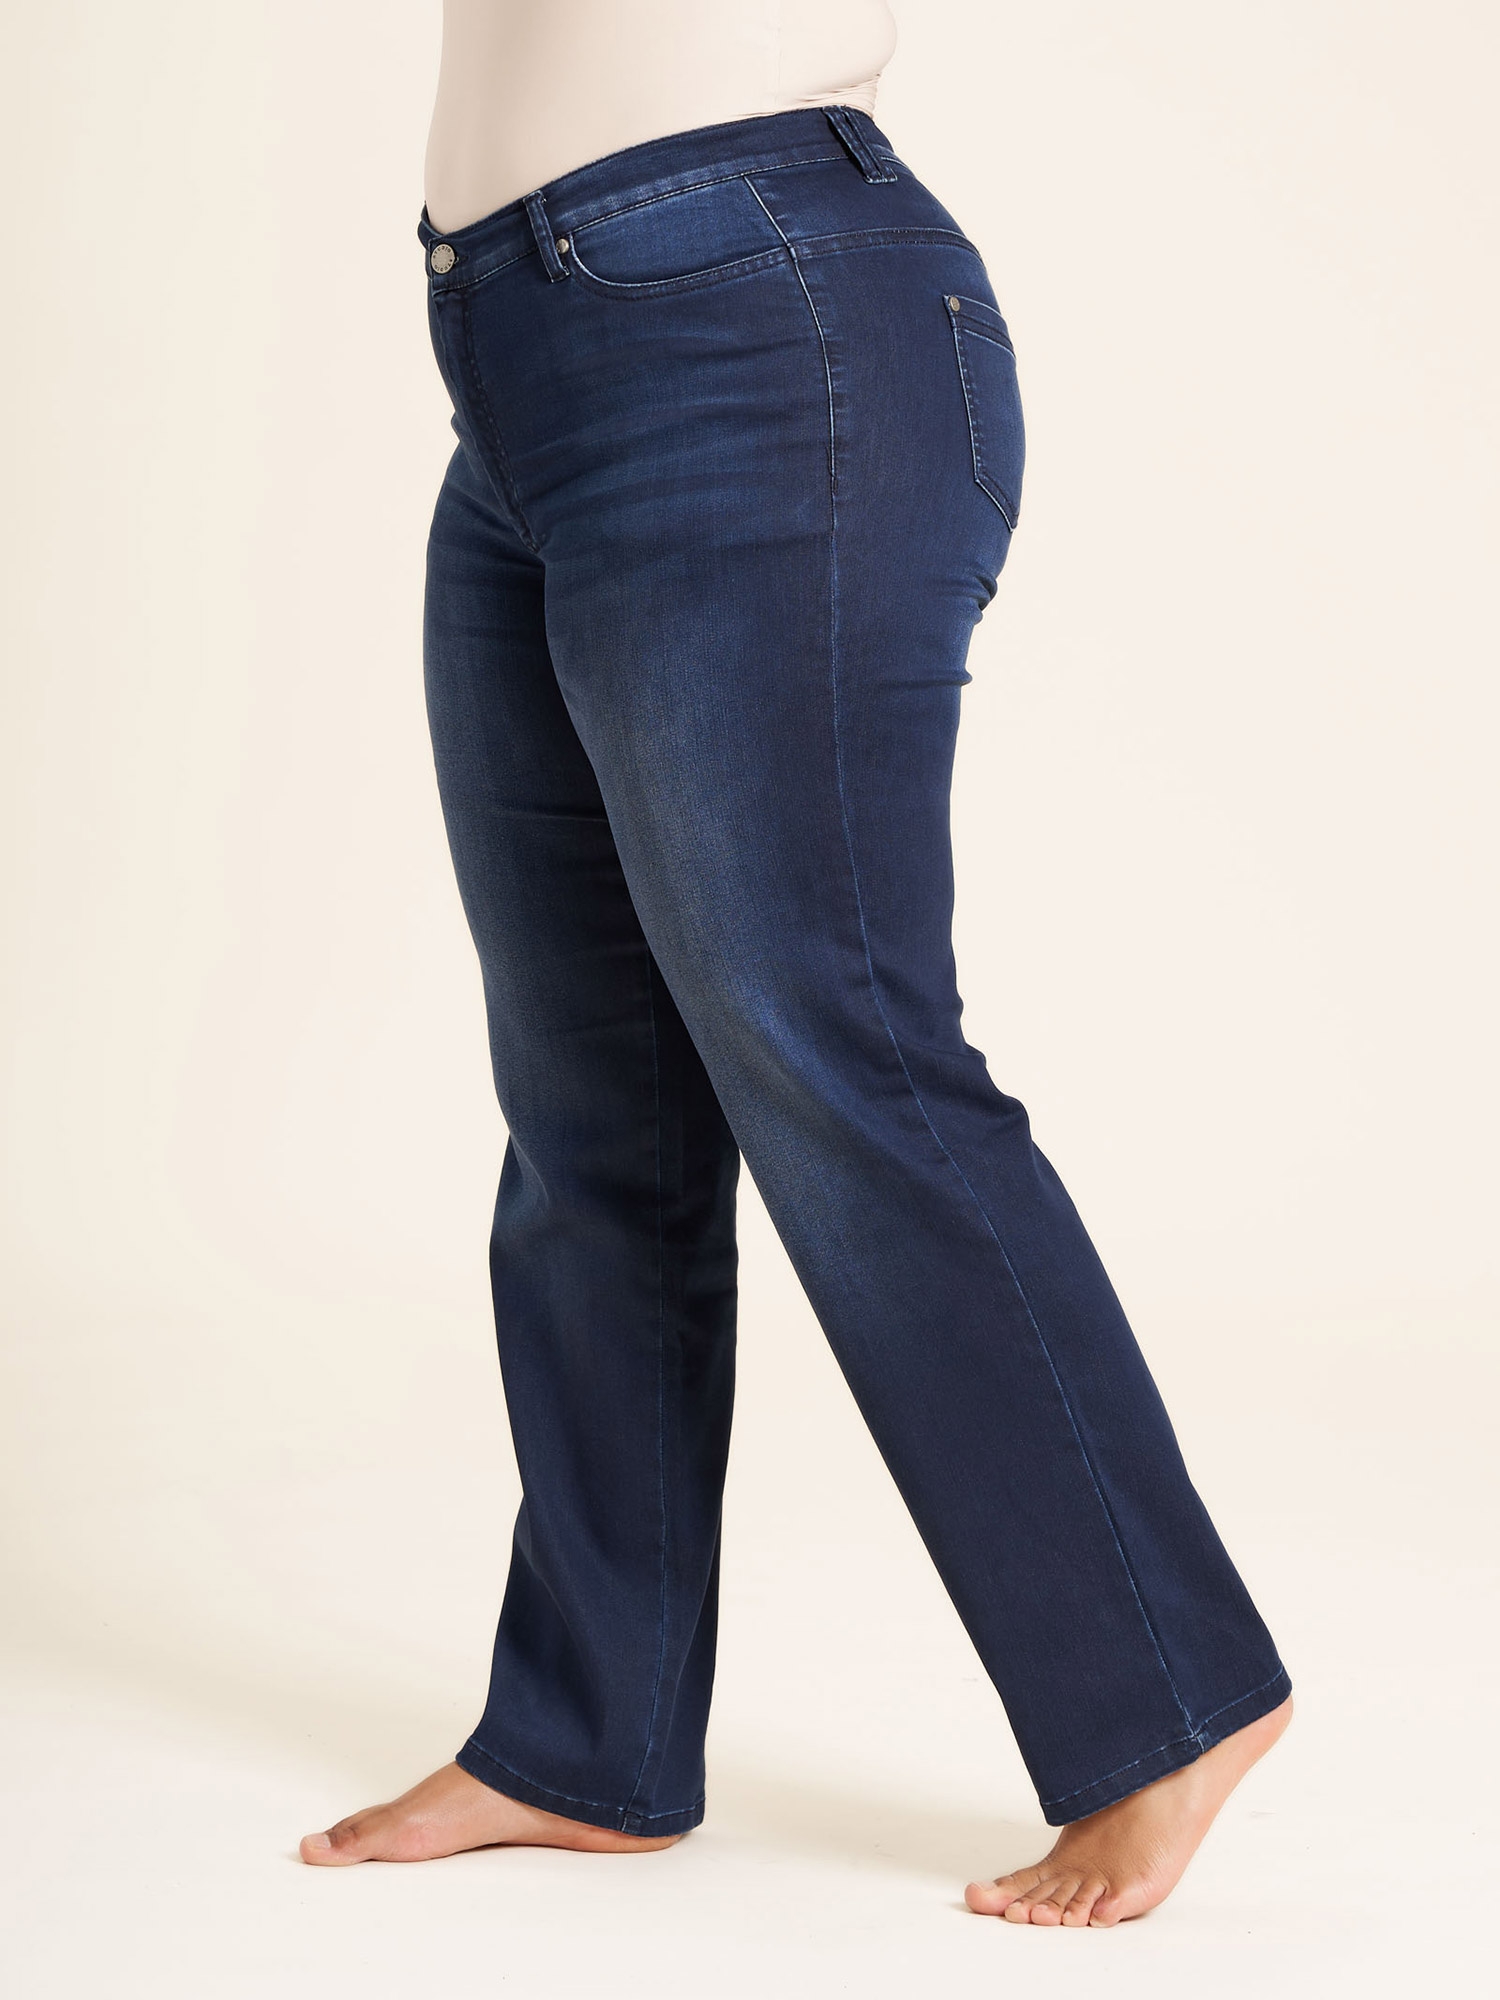 Ashley - Mørkeblå jeans med lige ben, lige pasform og kort benlængde fra Studio